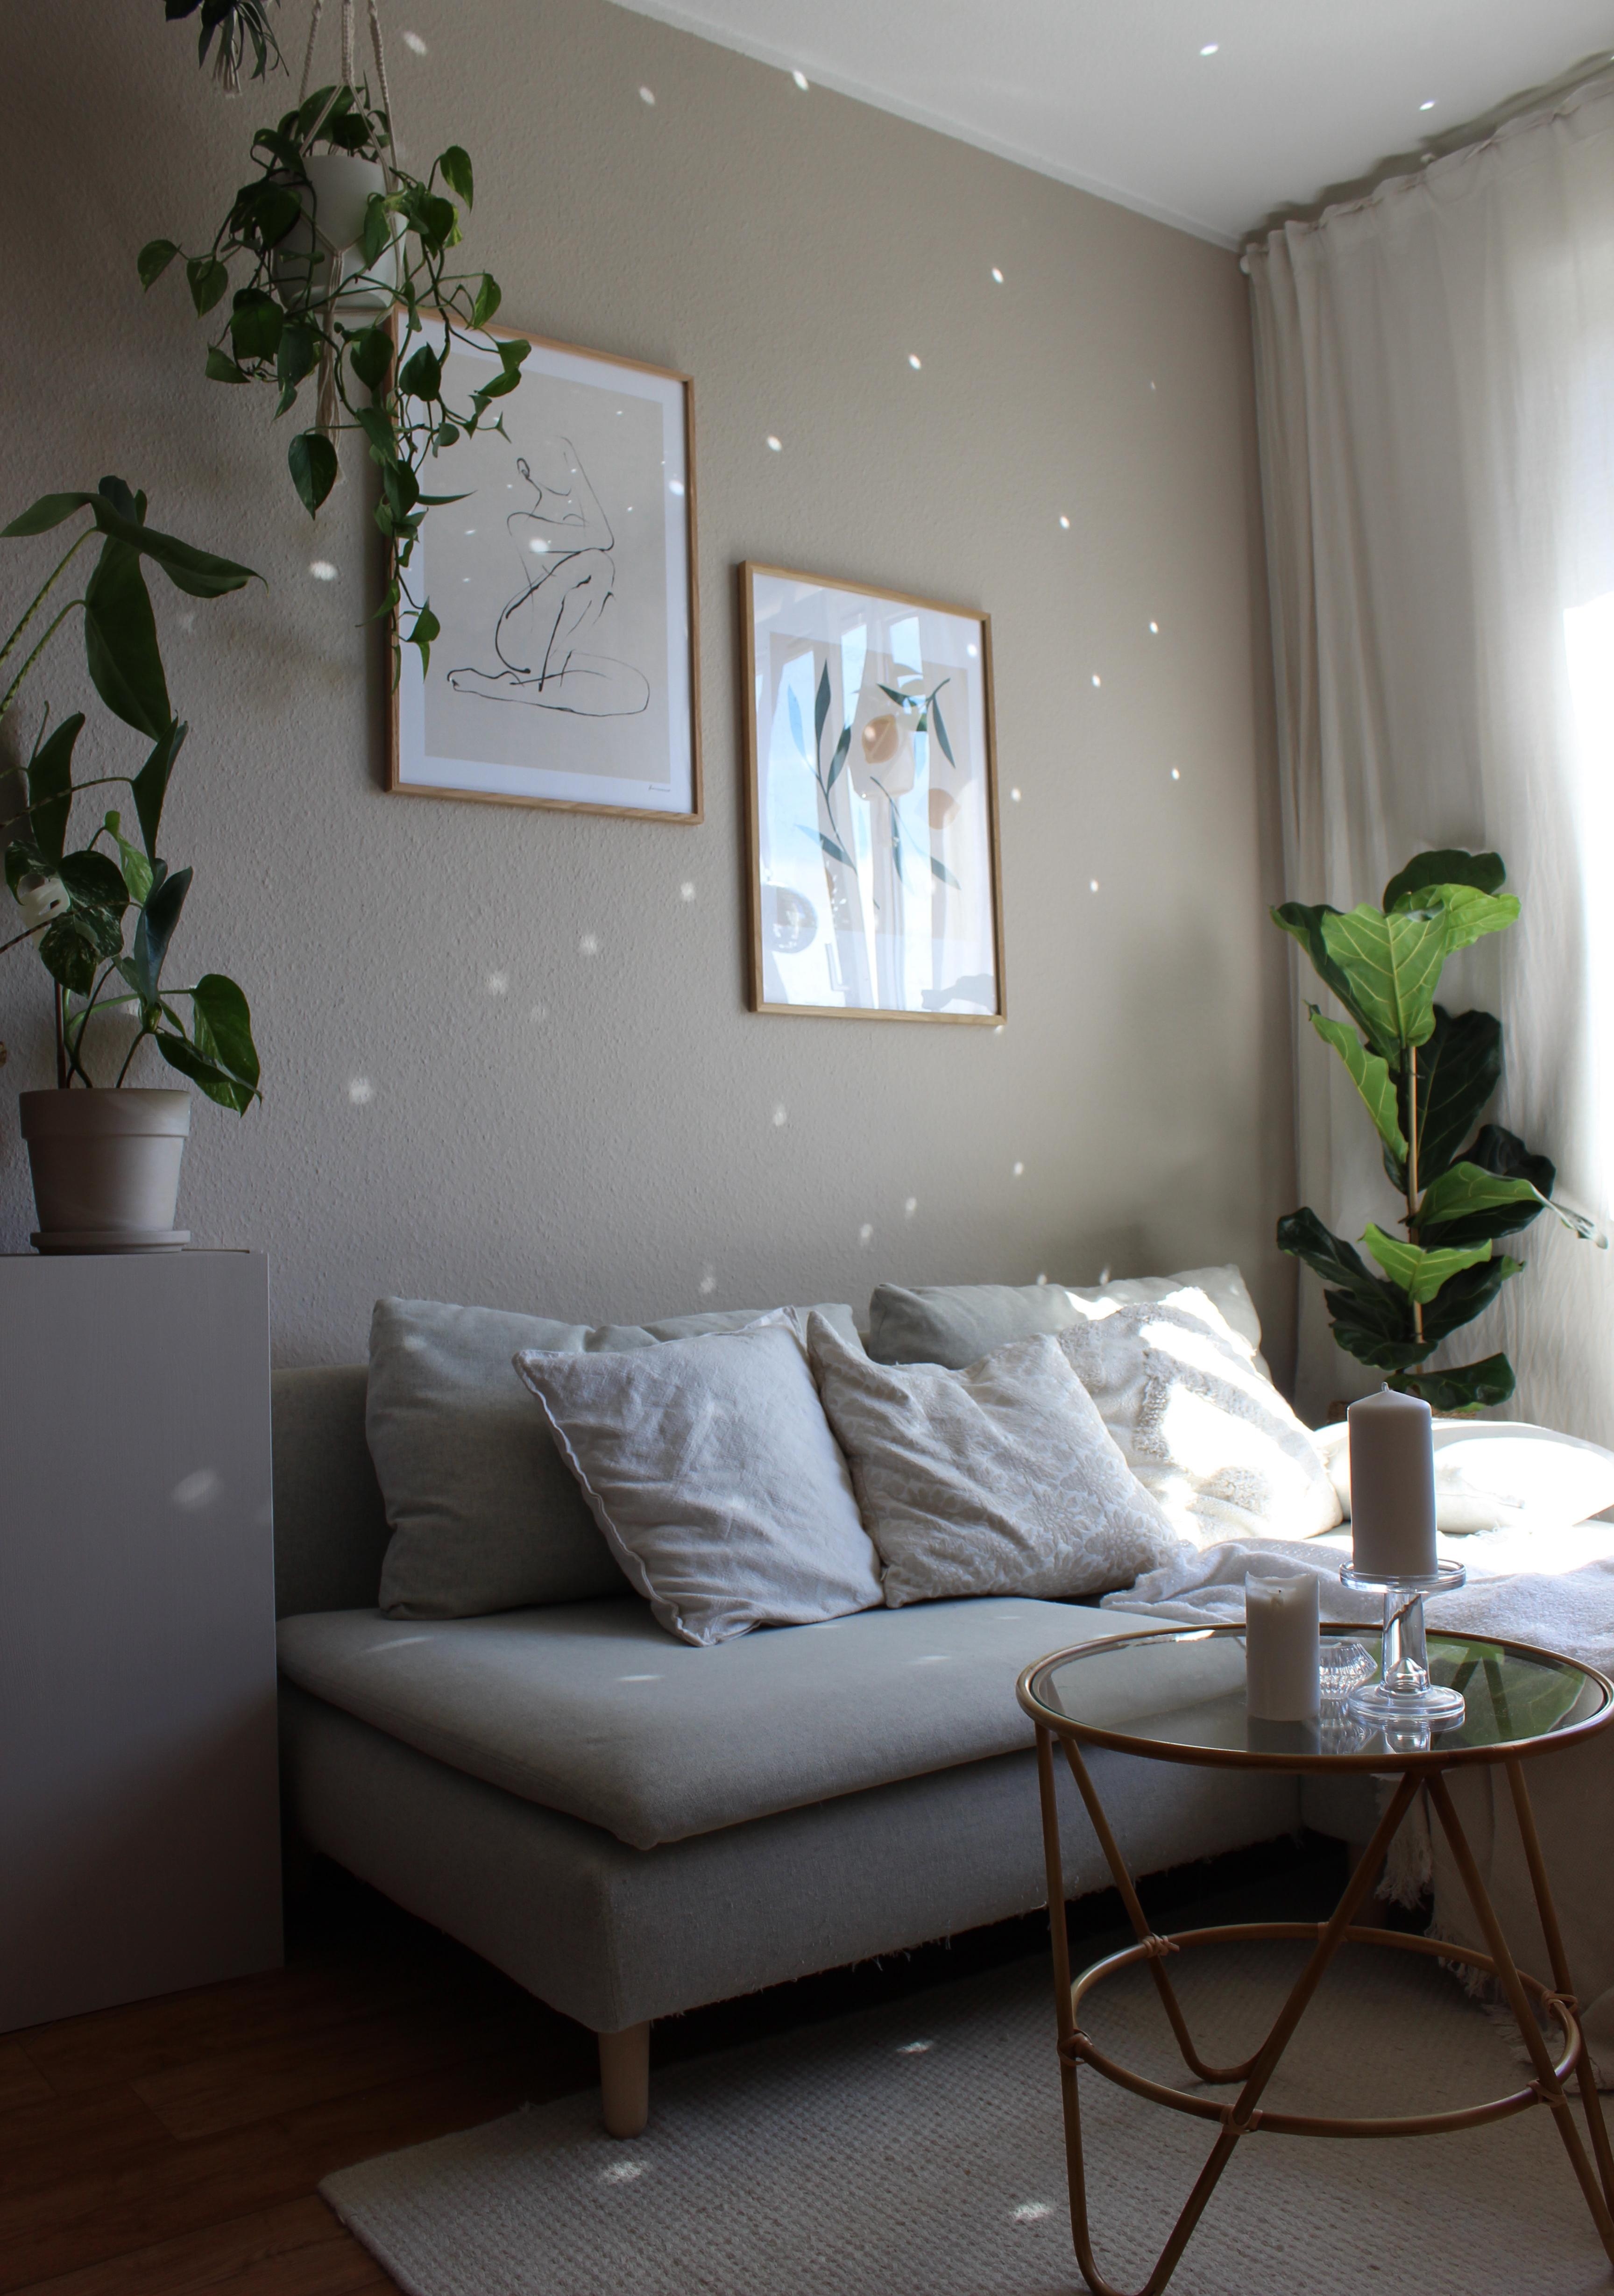 #wohnzimmer #discokugel #wandfarbe #beige #sofa #sonne #pflanzen